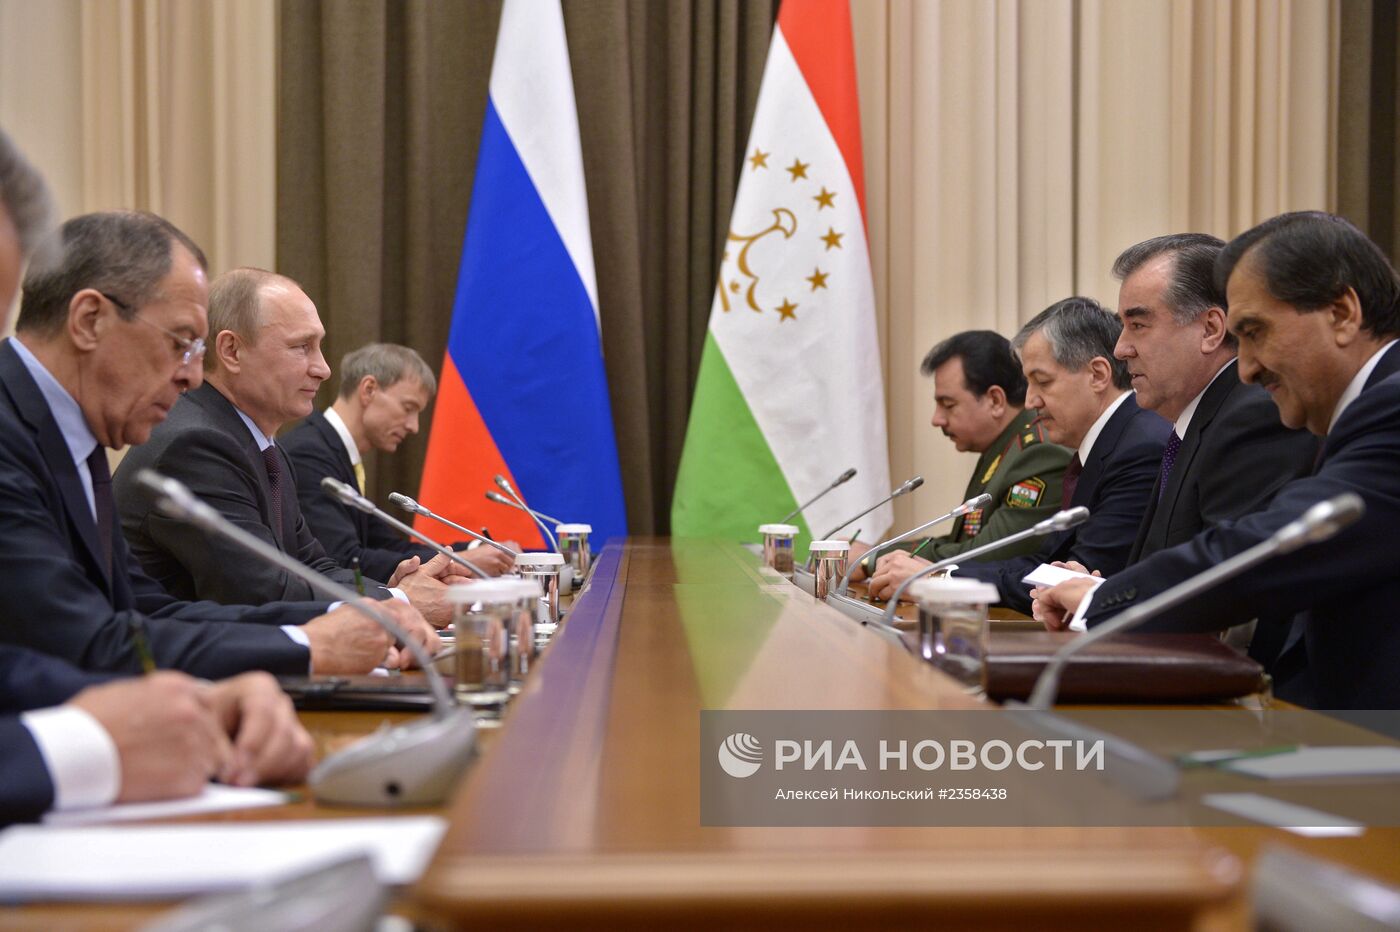 В.Путин встретился с президентом Таджикистана Э.Рахмоном